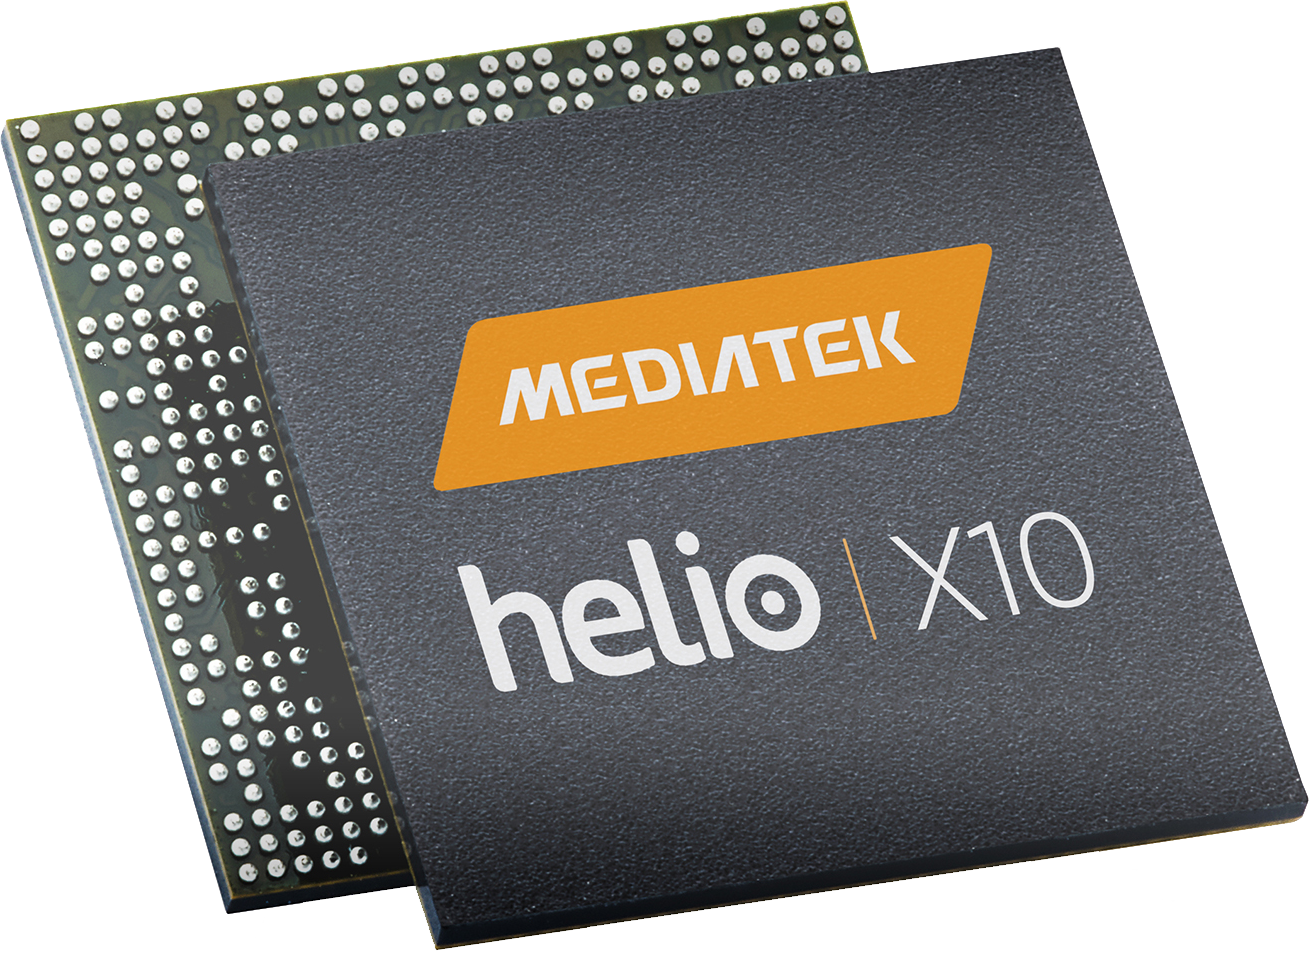 MediaTek-Helio-X10